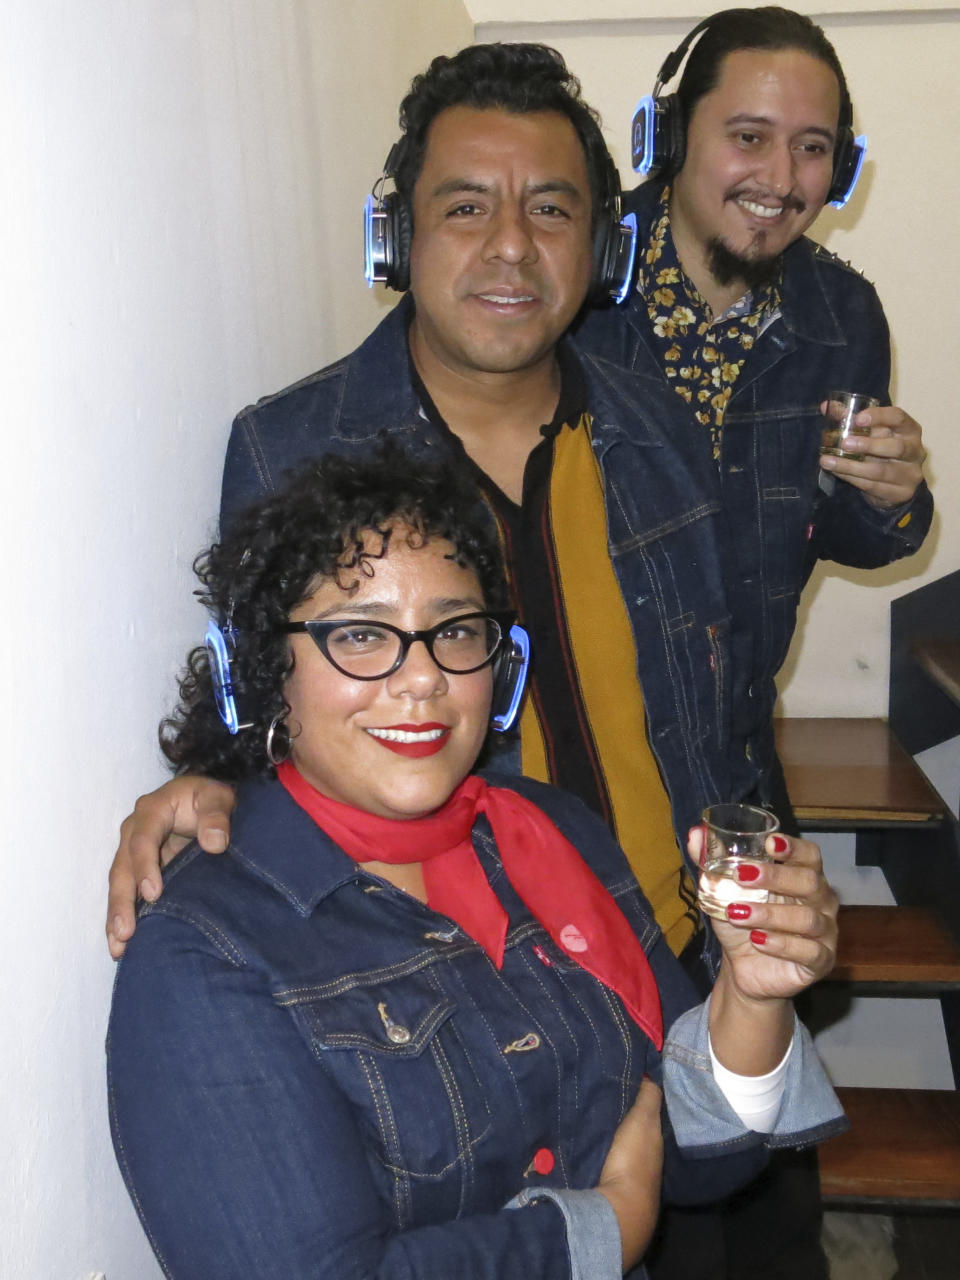 Miembros de la banda La Santa Cecilia, del frente hacia atrás, La Marisoul, Pepe Carlos y Alex Bendaña, posan para un retrato durante la presentación de su álbum "Cuatro copas", en la Ciudad de México, el 8 de noviembre de 2022. (Foto AP/Berenice Bautista)